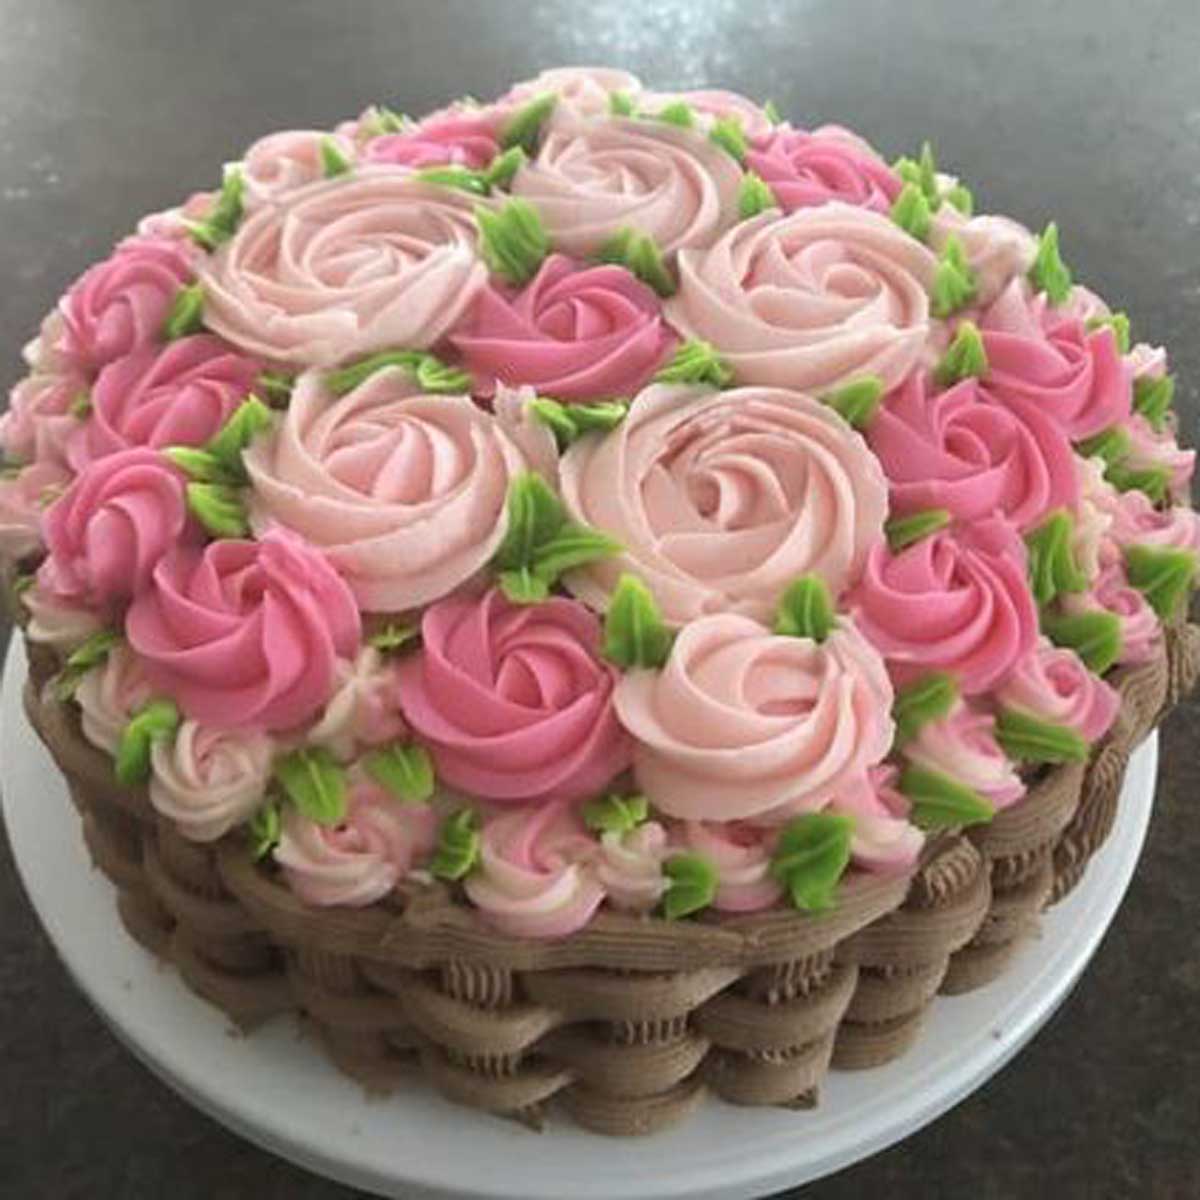 Flower Basket Cake Designs & Images